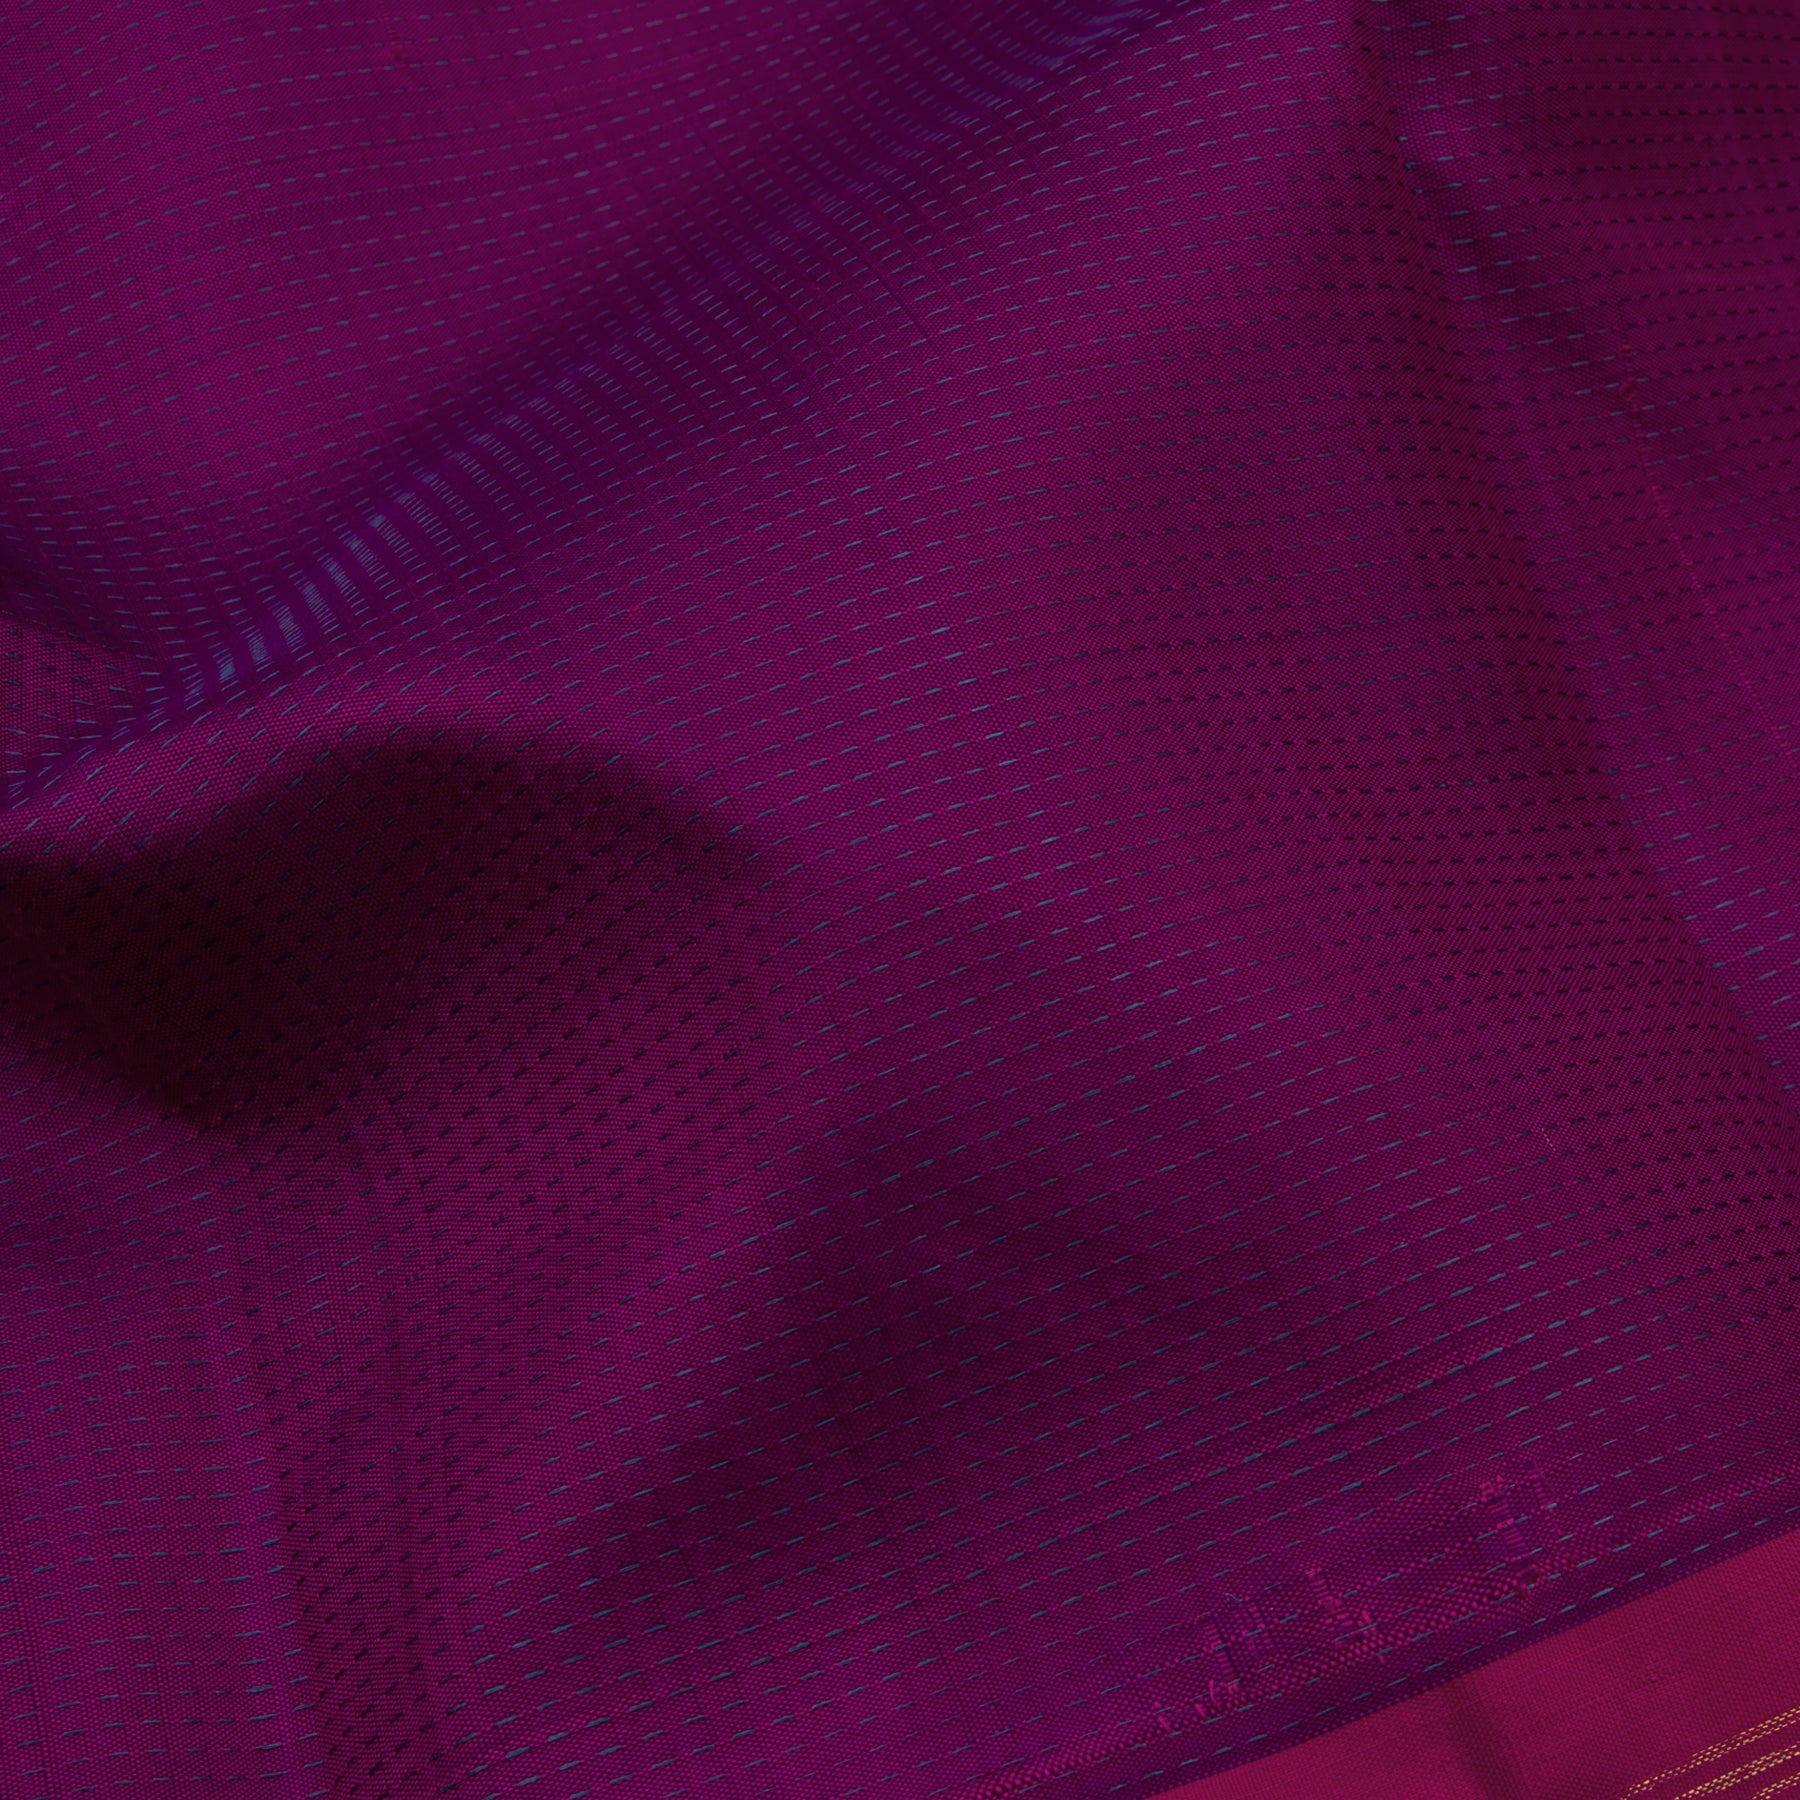 Kanakavalli Kanjivaram Silk Sari 23-560-HS001-02702 - Fabric View